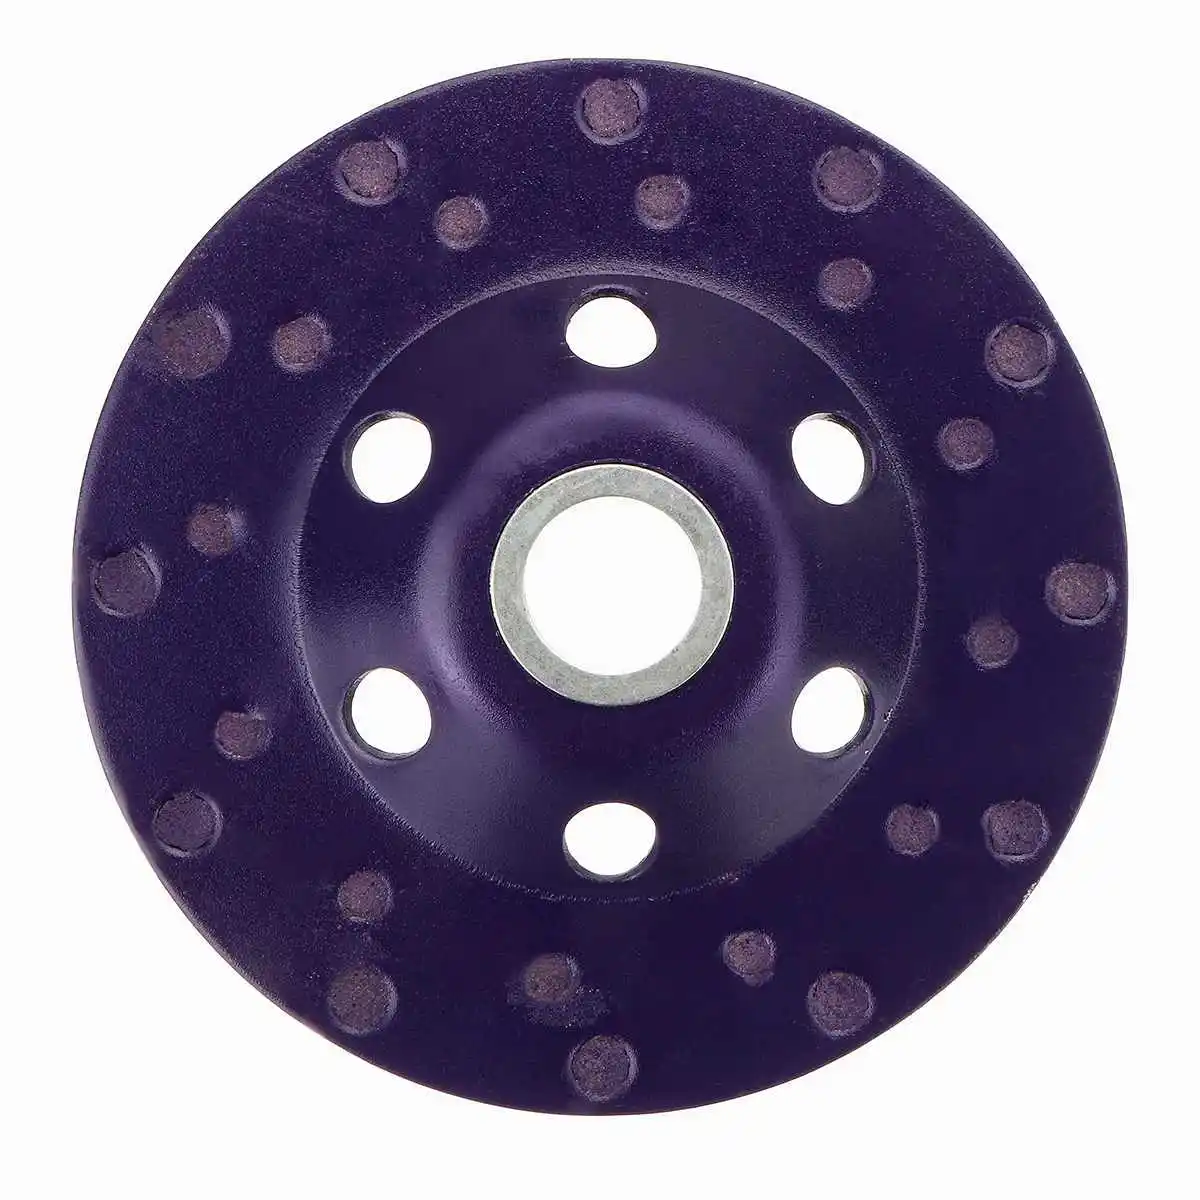 1 шт. " 100 мм Алмазный шлифовальный диск шлифовка в форме чаши чашка бетон гранит камень керамический режущий диск инструмент